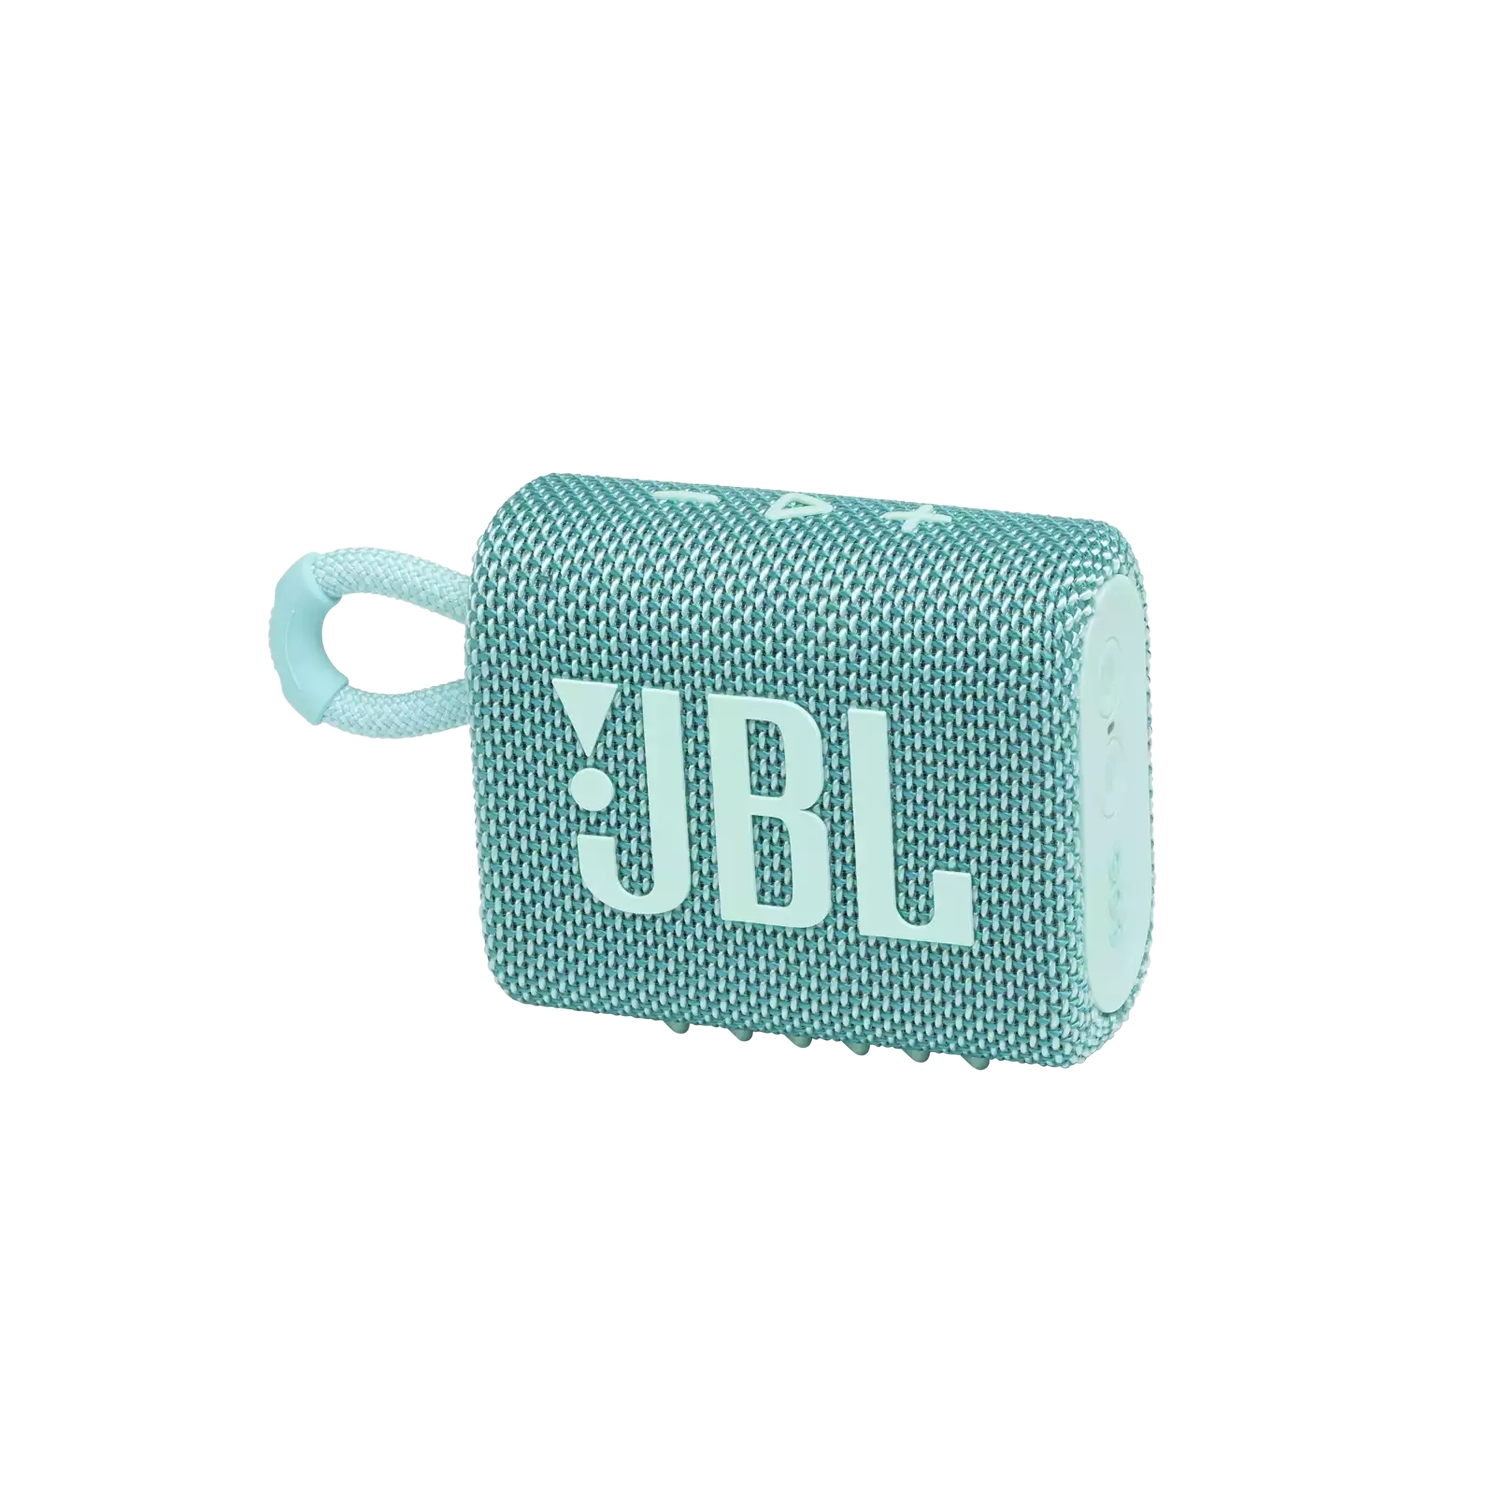 Портативная акустика JBL GO 3 бирюзовая портативная акустика jbl go 3 4 2w bt цвет желтый